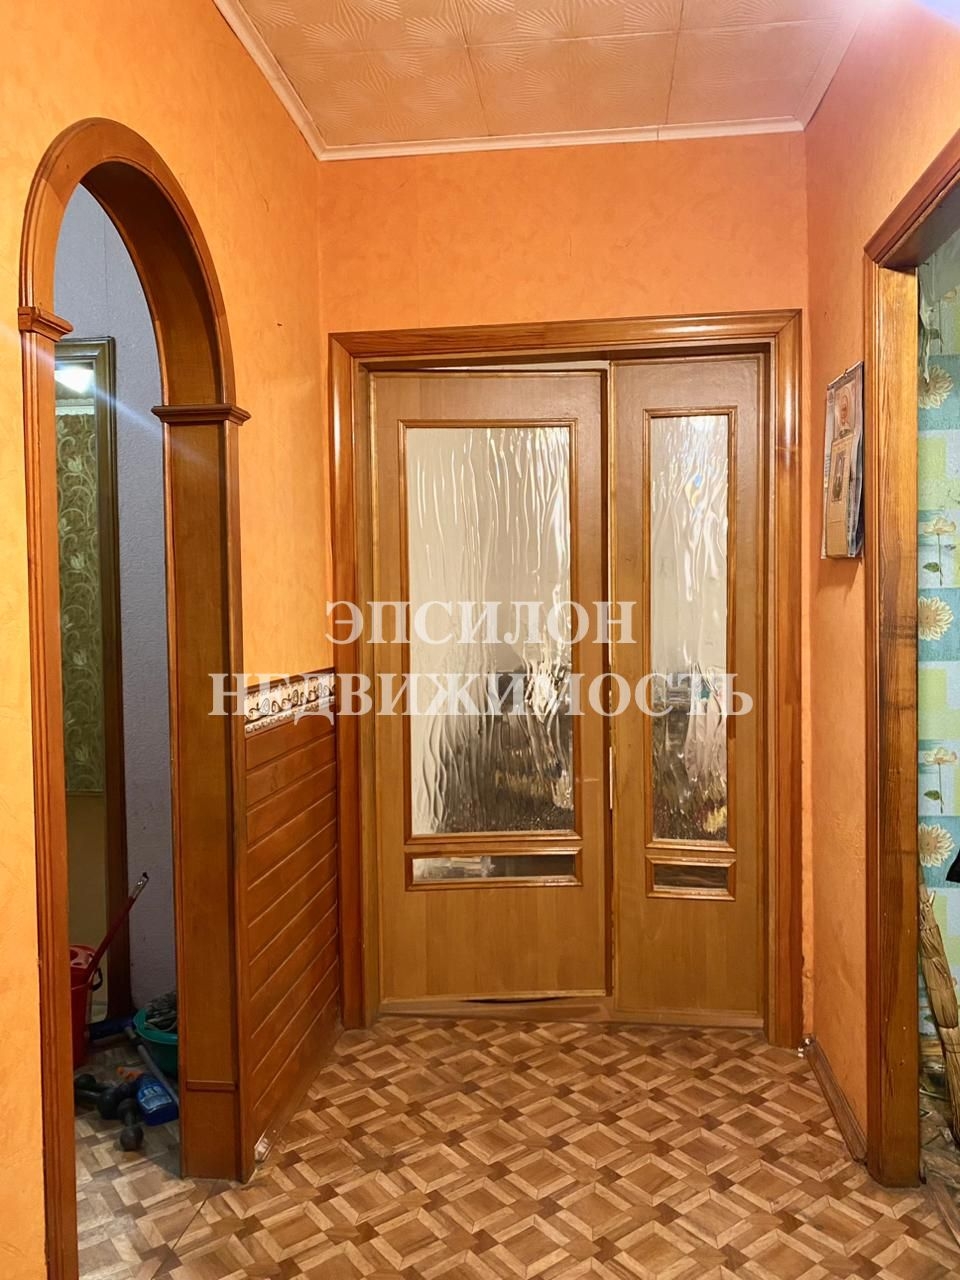 Продам 3-комнатную квартиру в городе Курск, на улице Серегина, 26а, 4-этаж 9-этажного Панель дома, площадь: 60/37/8 м2